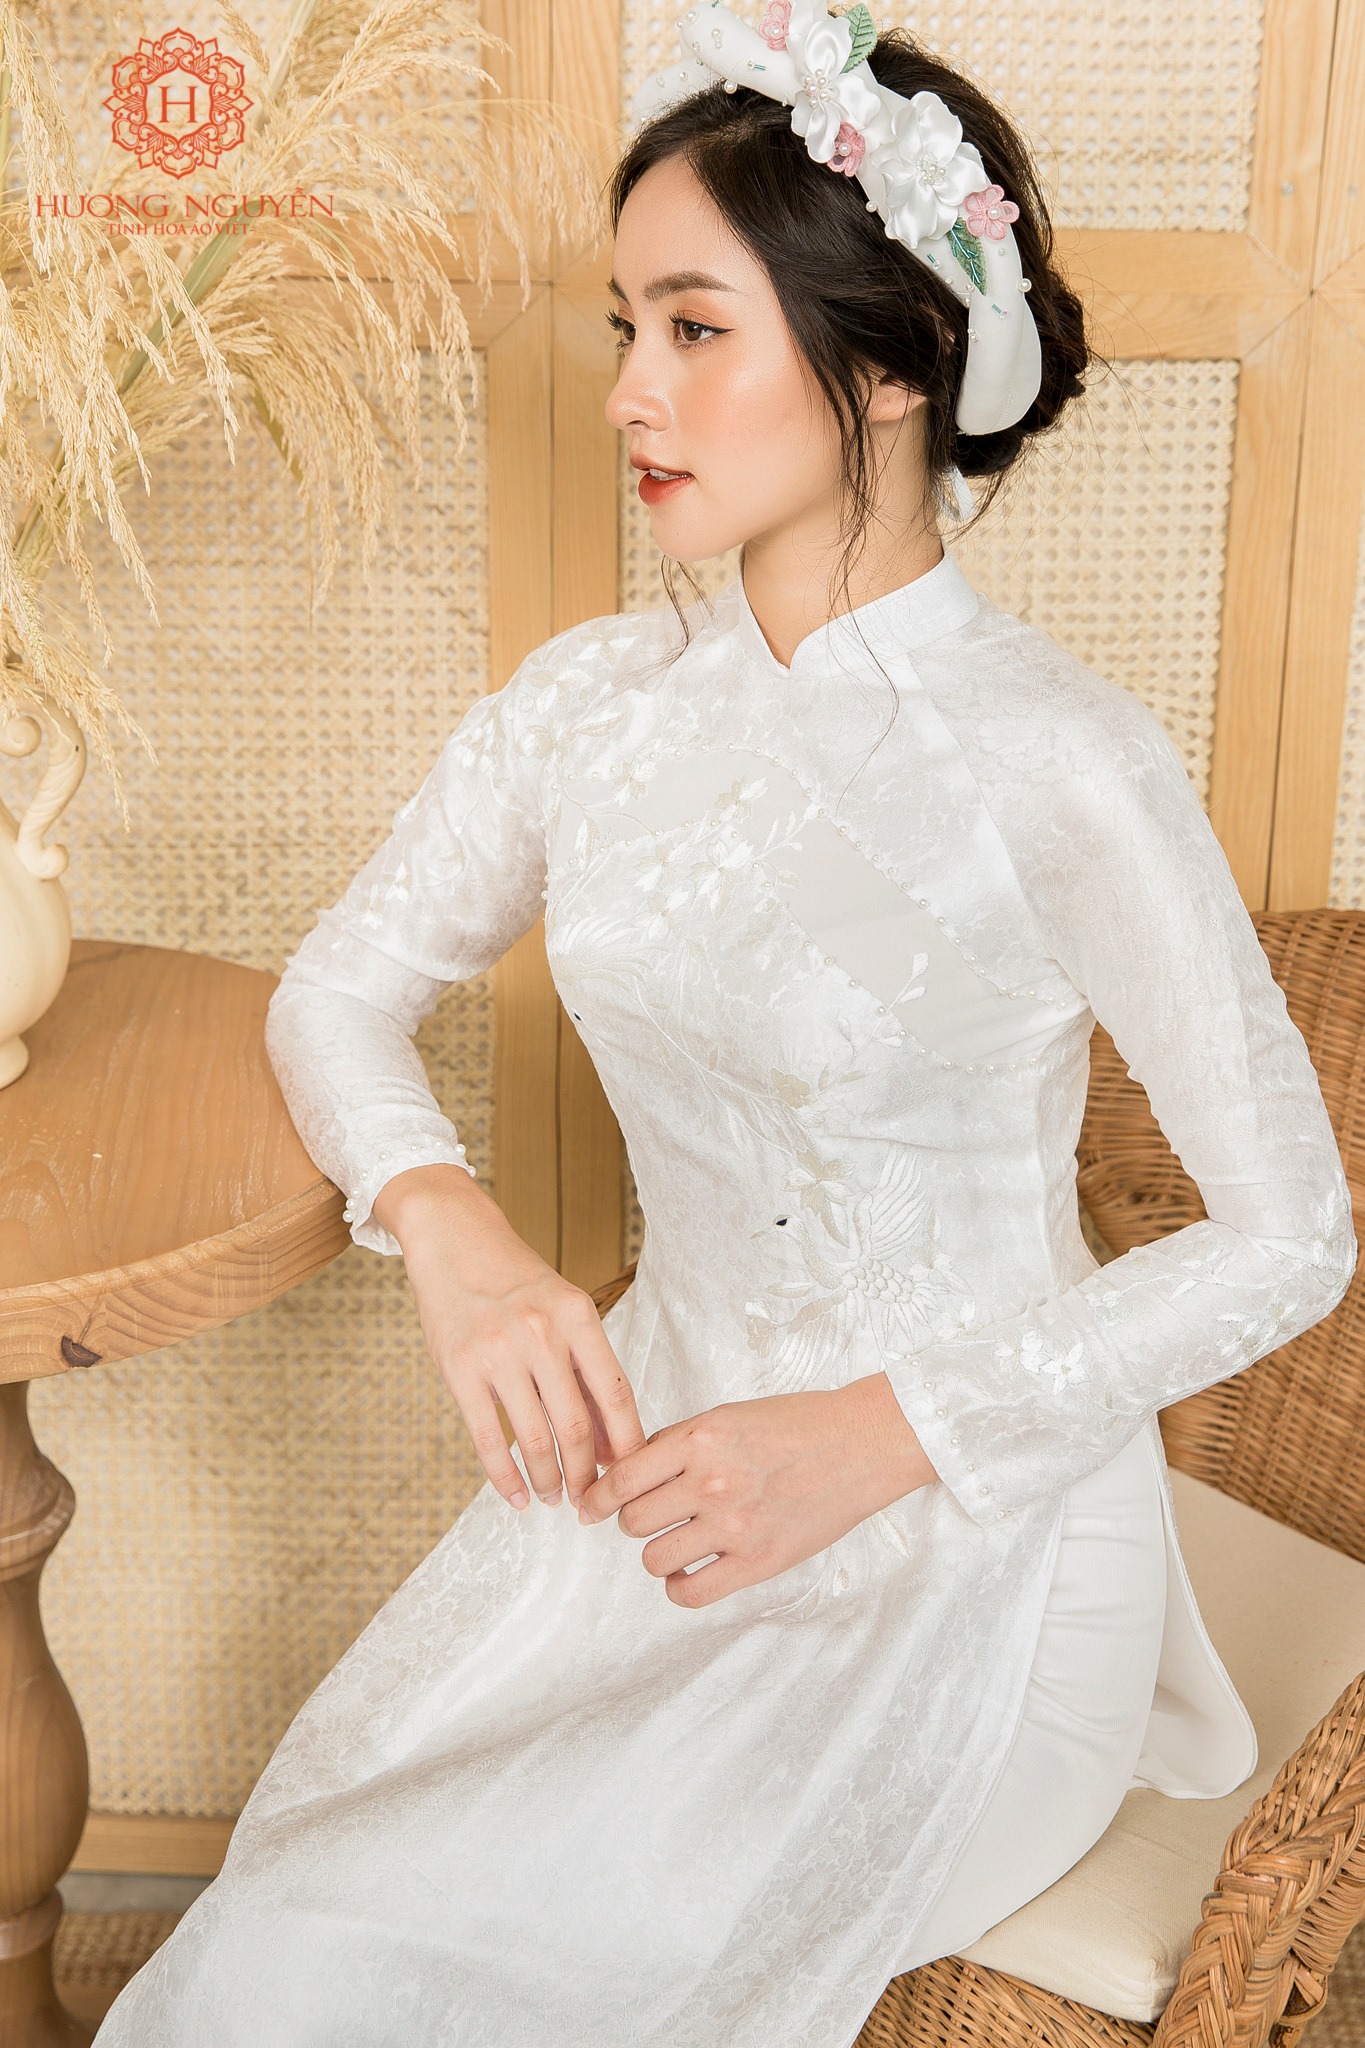 Mẫu áo dài cưới đơn giản, tinh tế tại Áo dài Hương